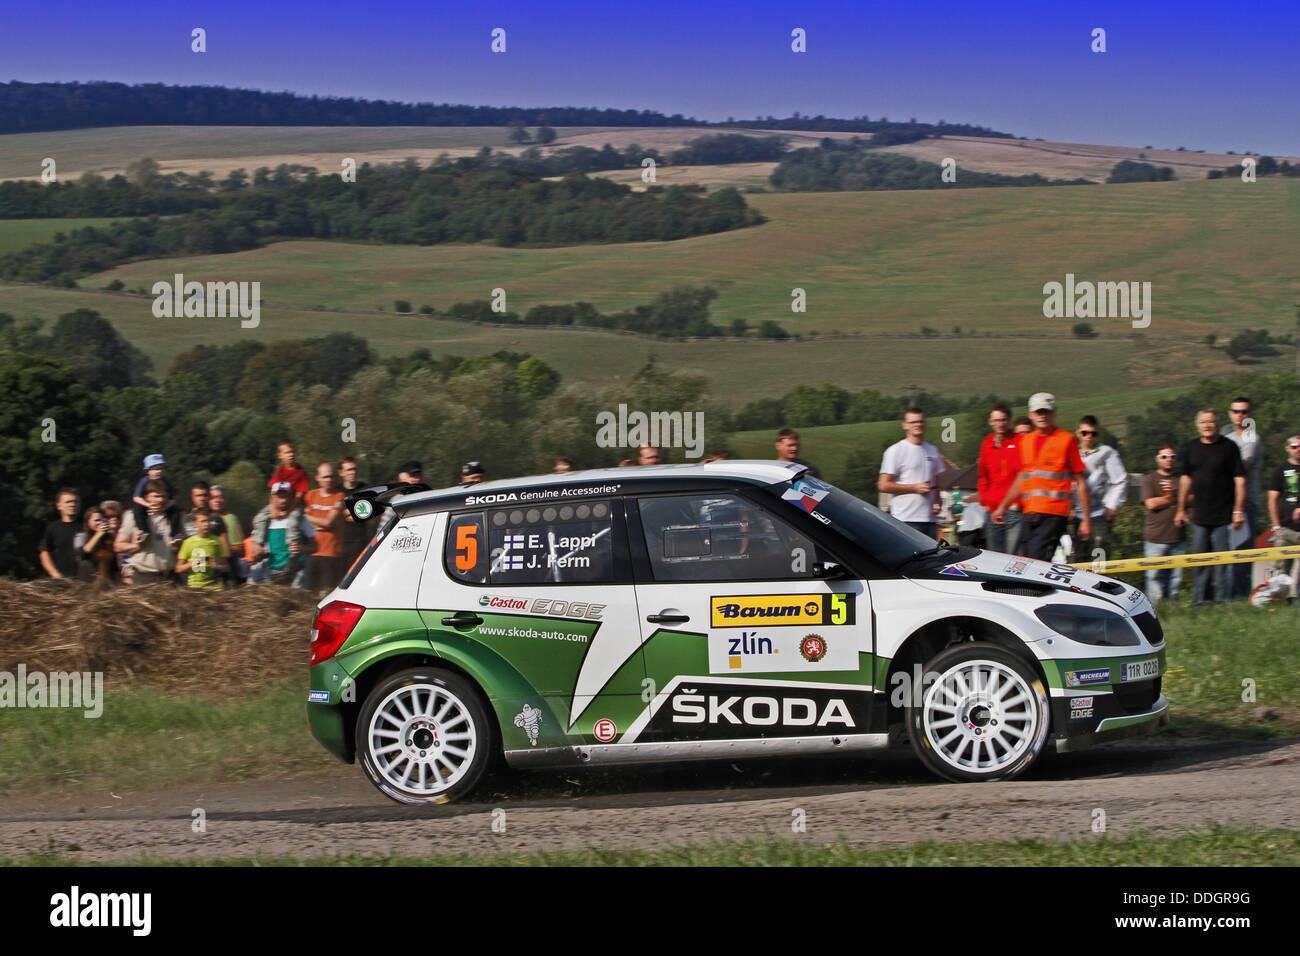 31.08.2013. Barum, Tschechische Europäische Rallye-Meisterschaften.  E. Lappi (FIN) - Ferm (FIN) - Skoda Fabia S2000 Stockfoto